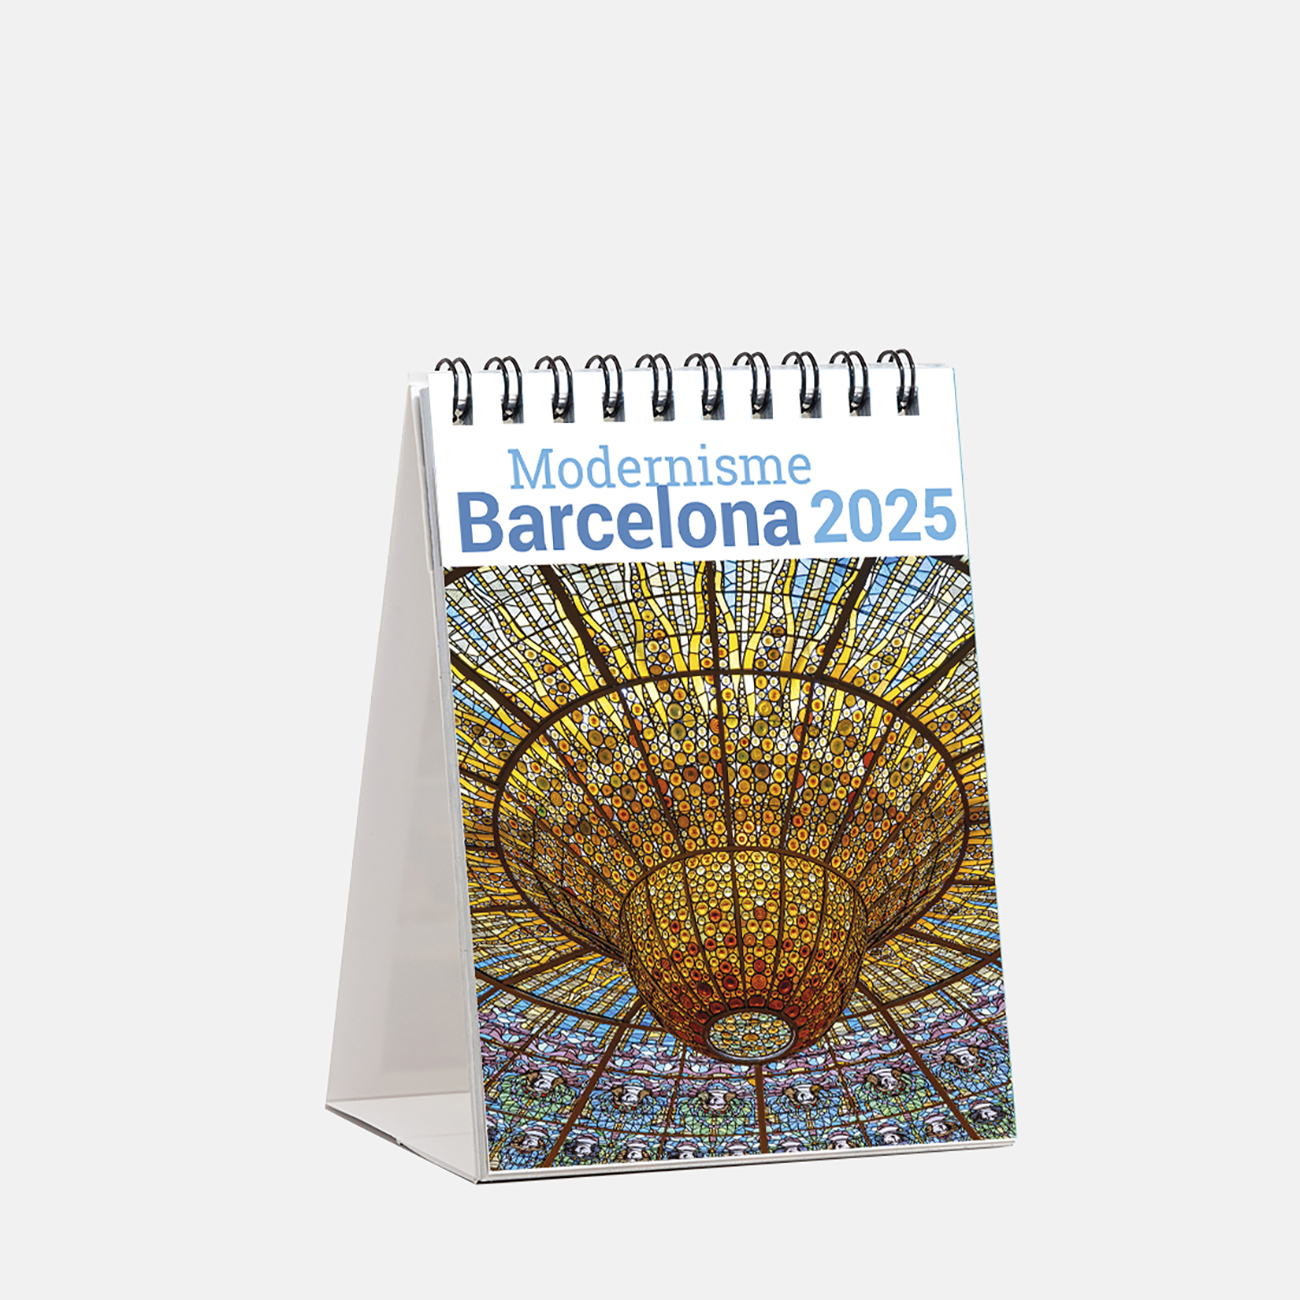 Calendario 2025 Modernisme Barcelona sm25mod calendario mini 2025 modernisme barcelona